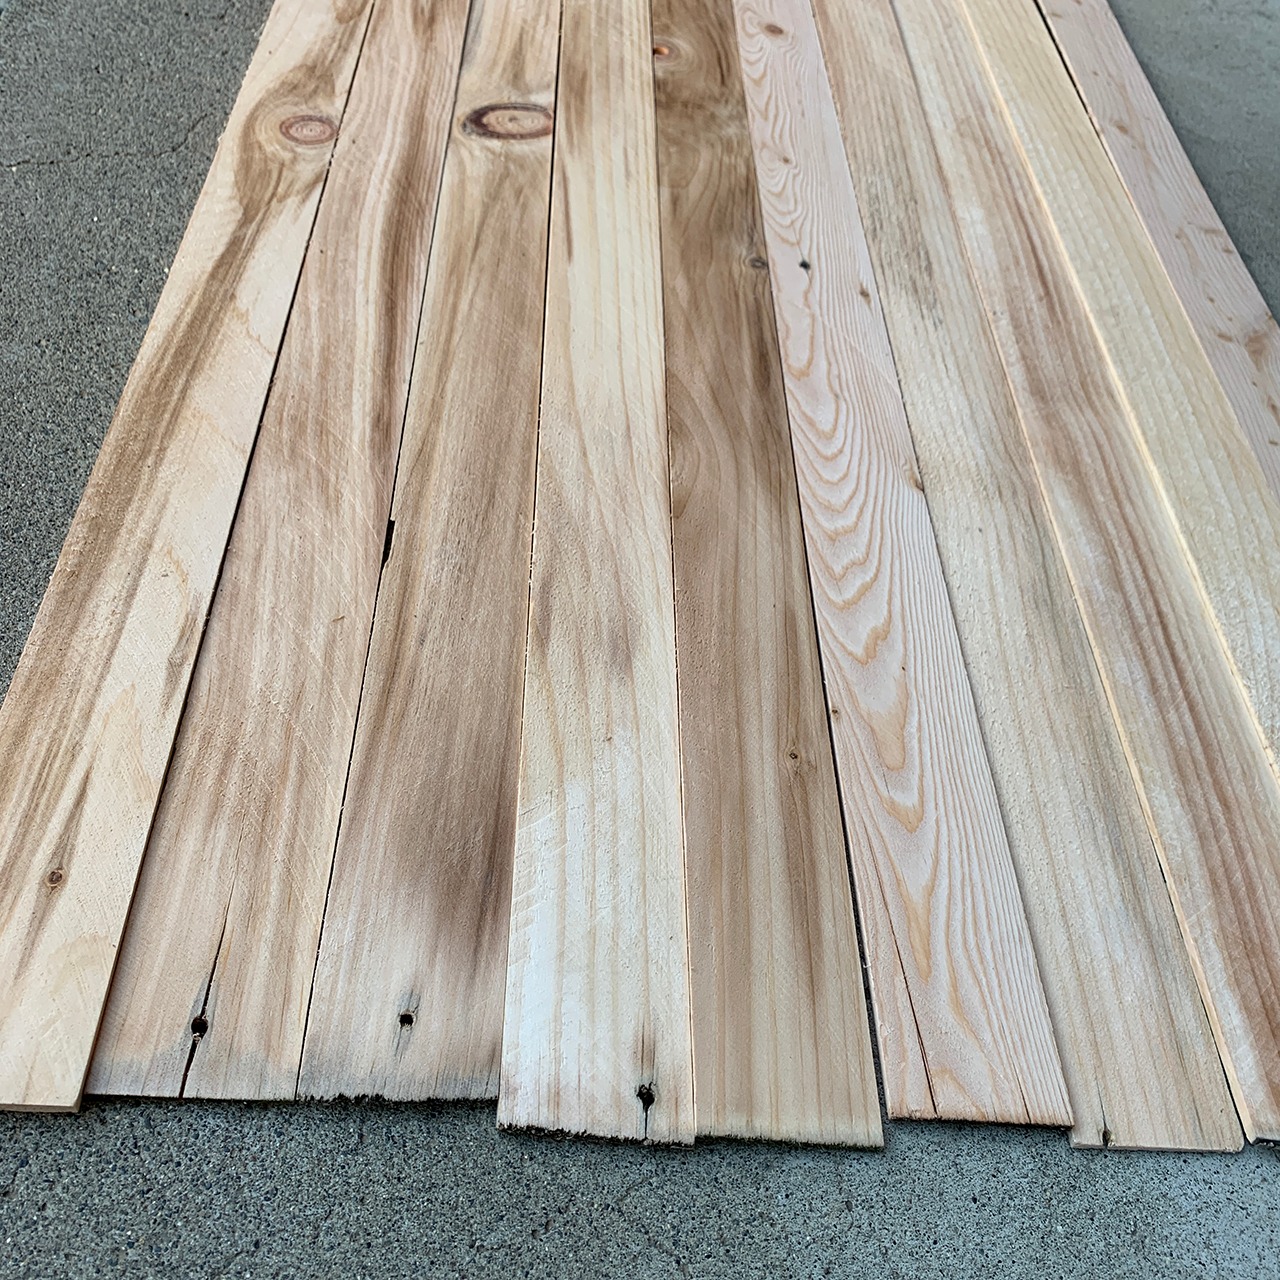 Cut Offs Barn Wood Panel L900mm 10pcs